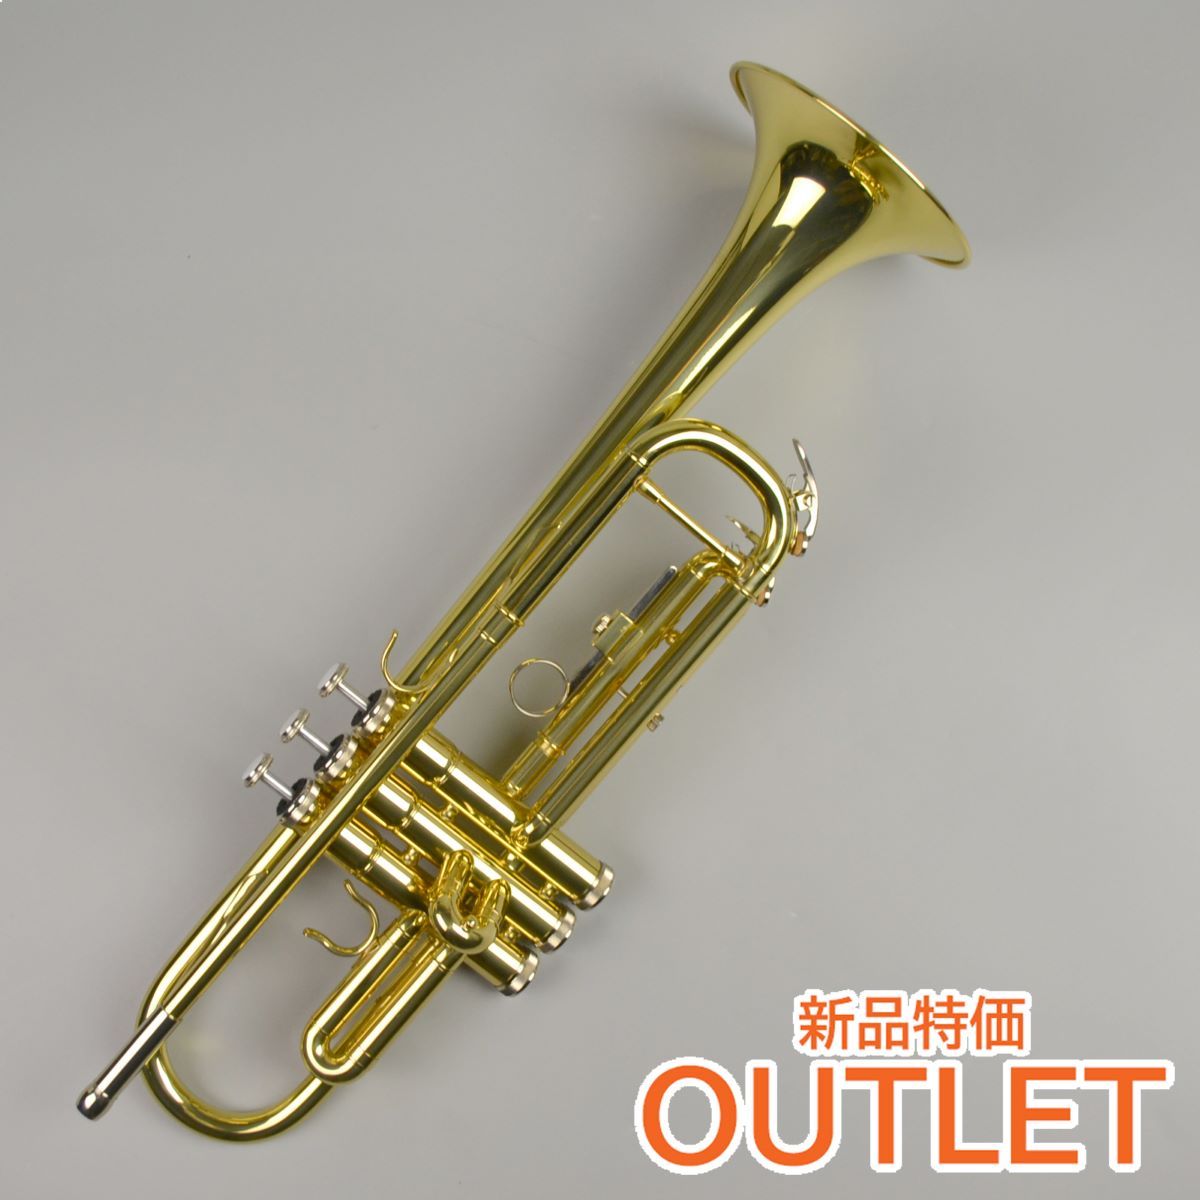 Briller トランペット trumpet - 管楽器